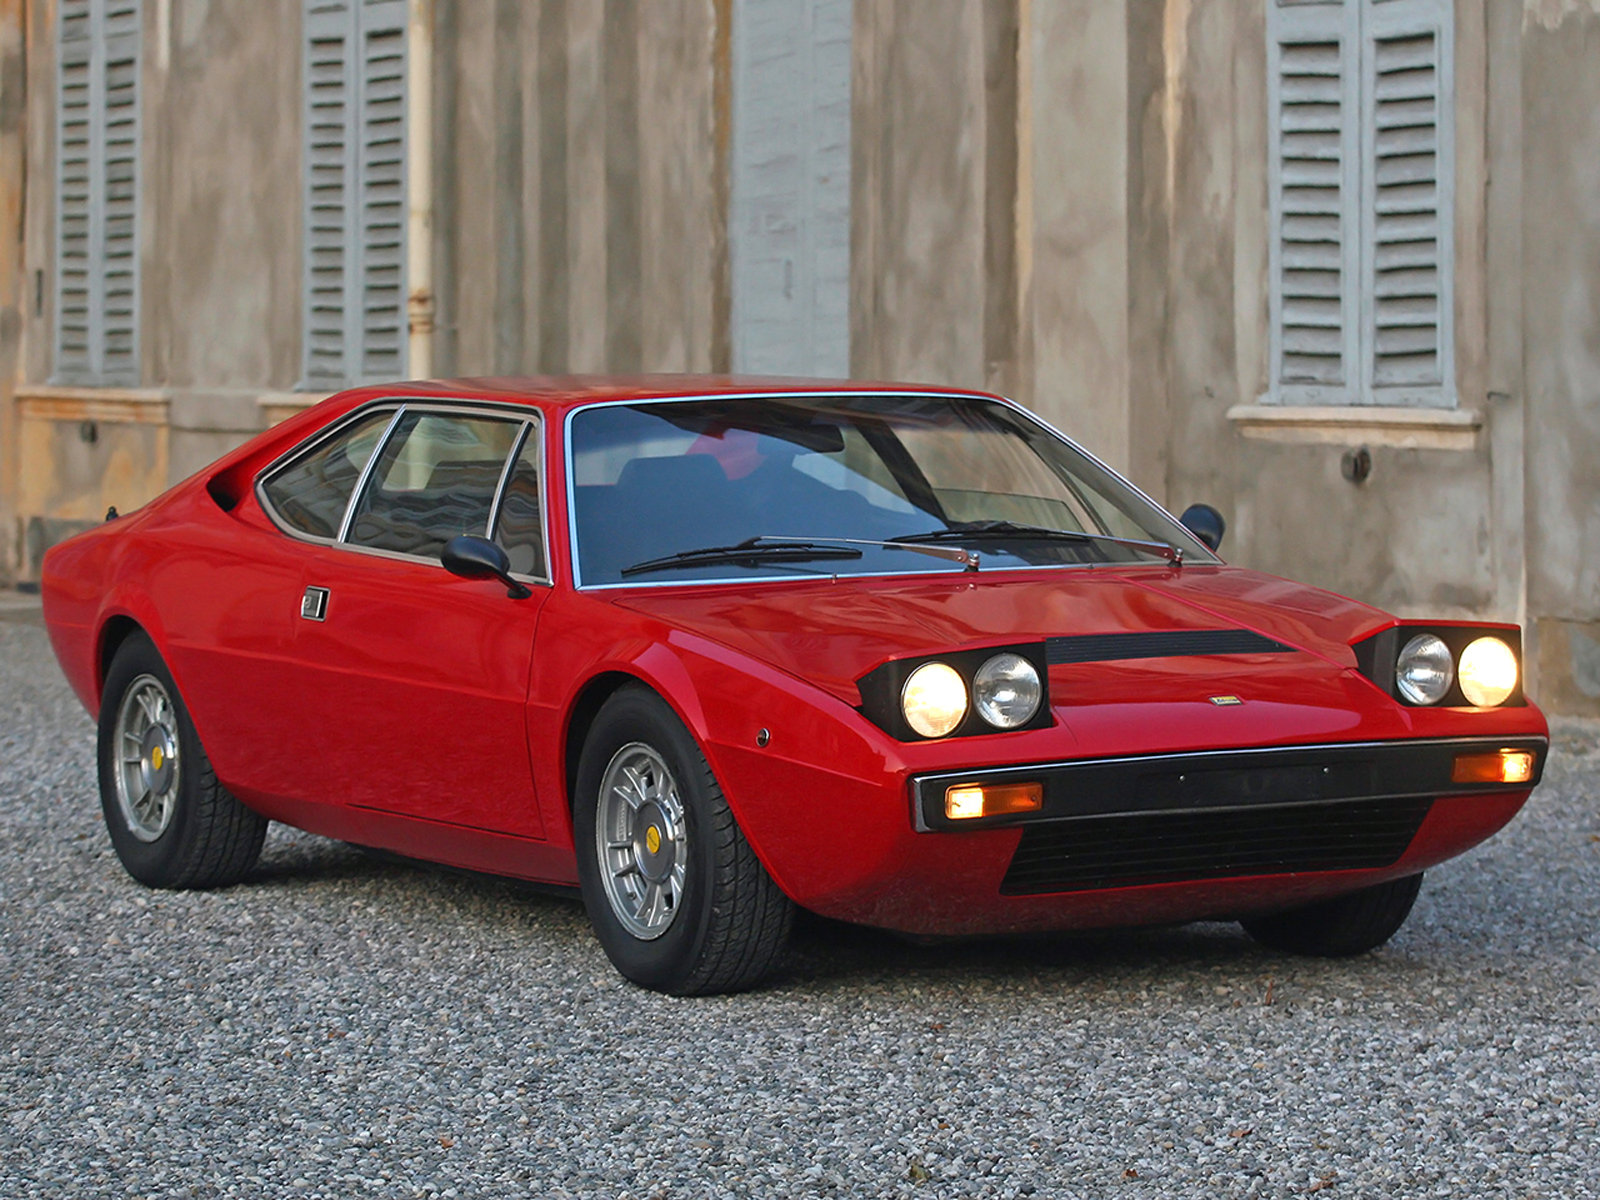 Ferrari 308. Ferrari 308 gt4. Dino 308 gt4. Ferrari 208/308. Dino 308 gt4 1973.